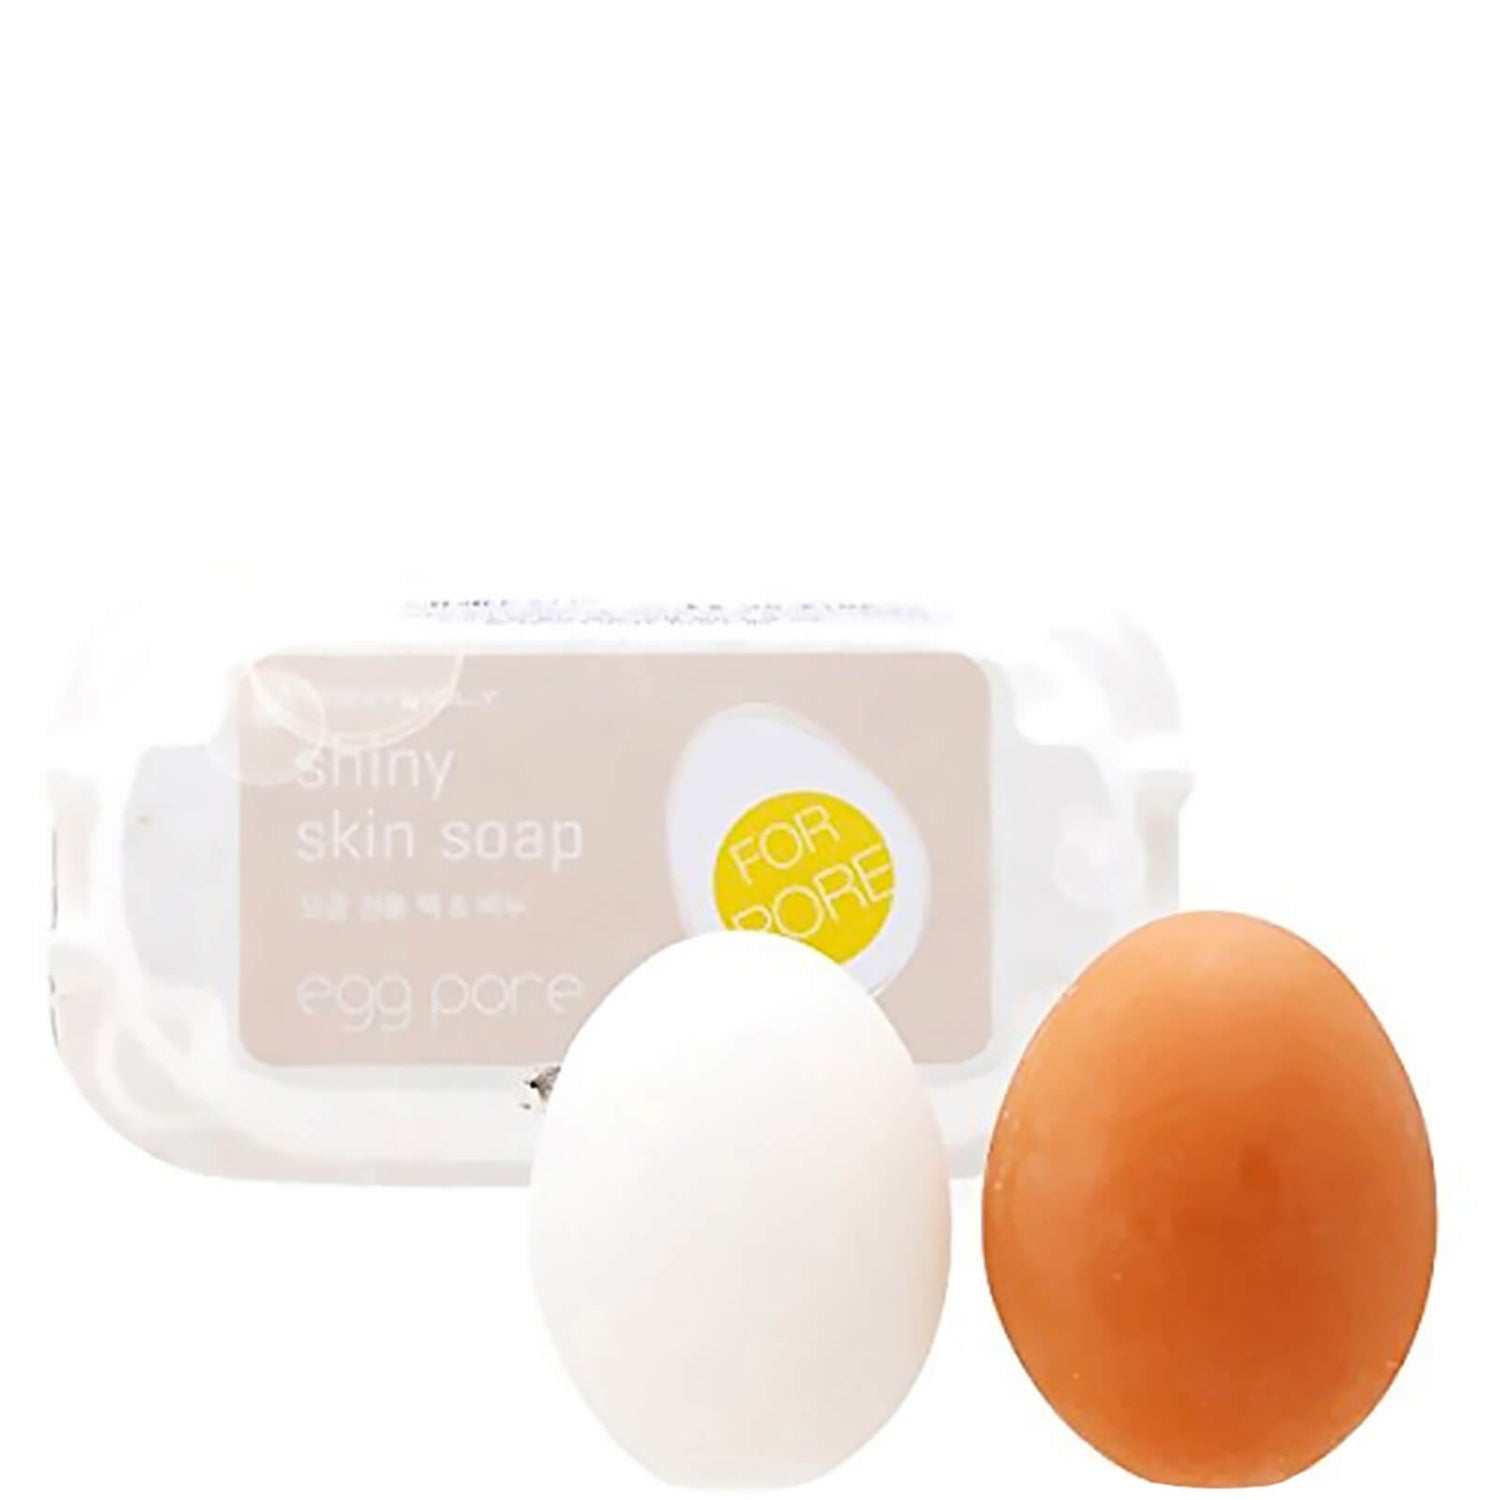 TONYMOLY Egg Pore Shiny Skin Soap